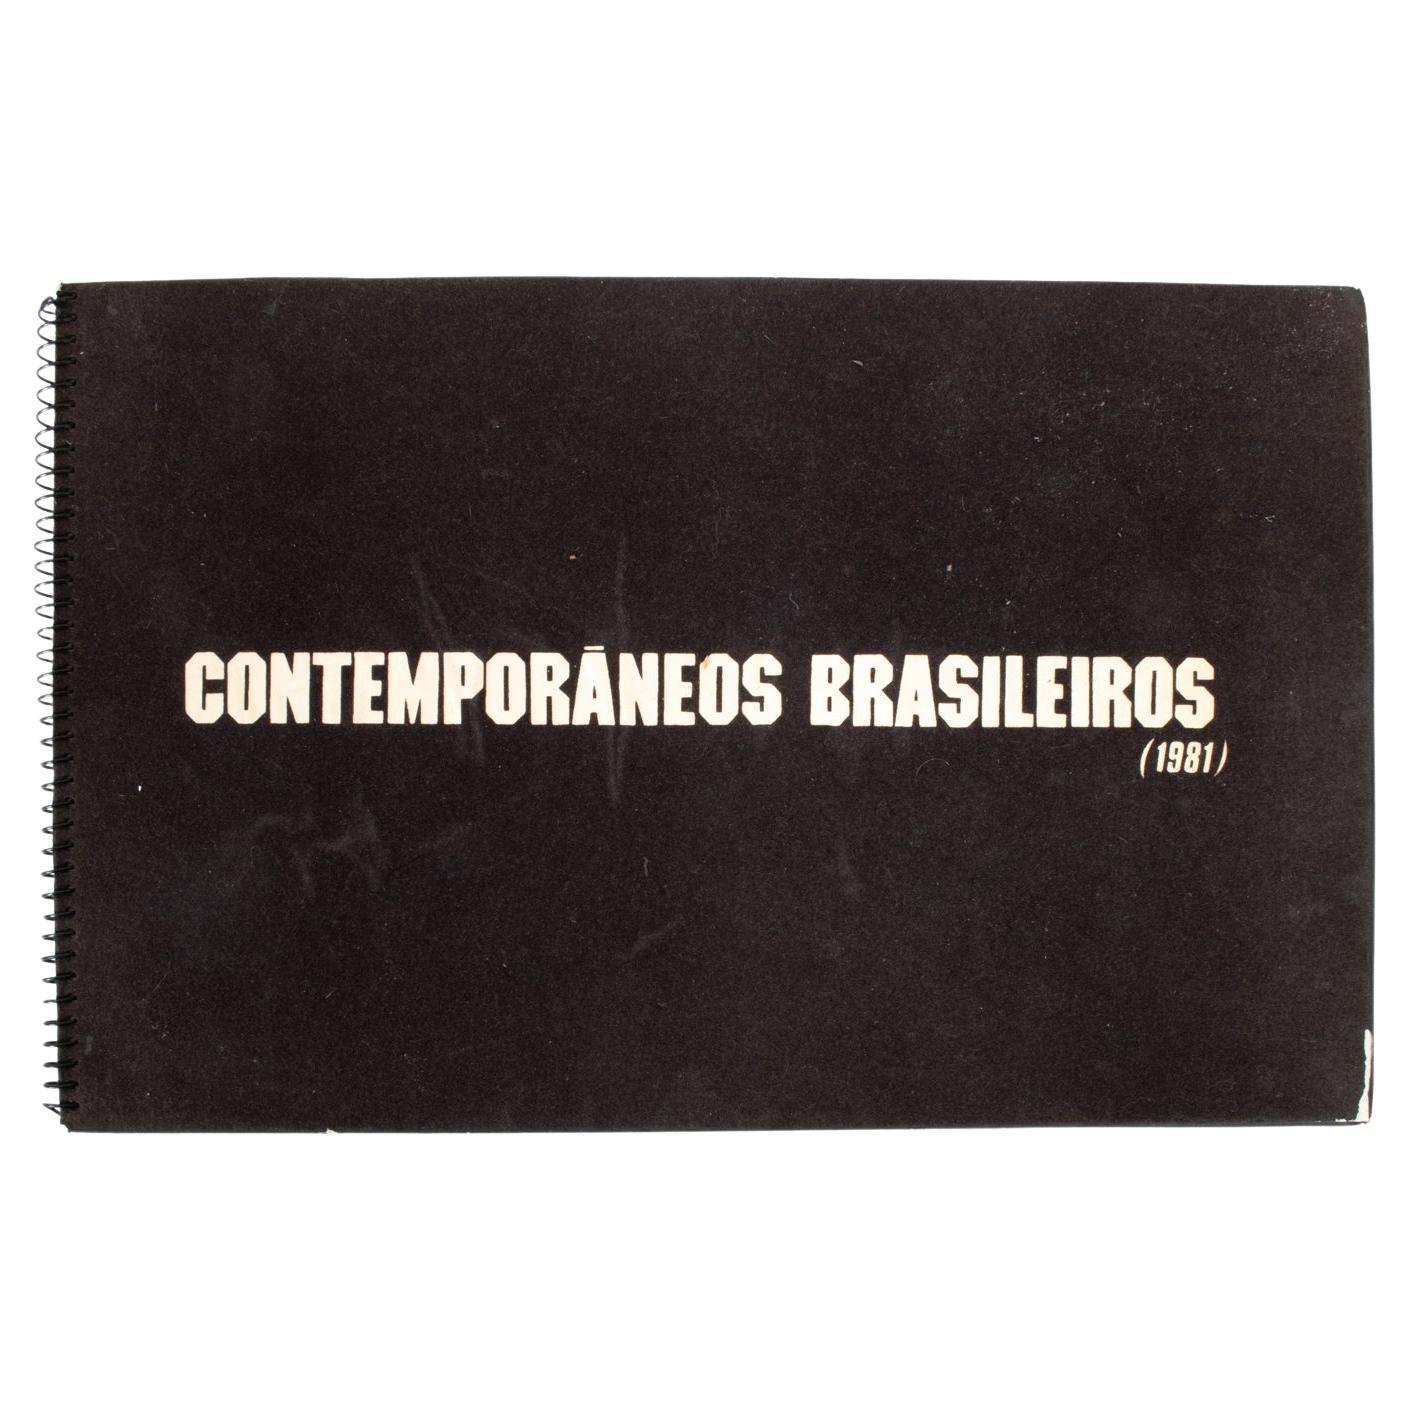 Ltd. Ed. Art Book, "Contemporâneos Brasileiros 1981", Galeria de Arte São Paulo